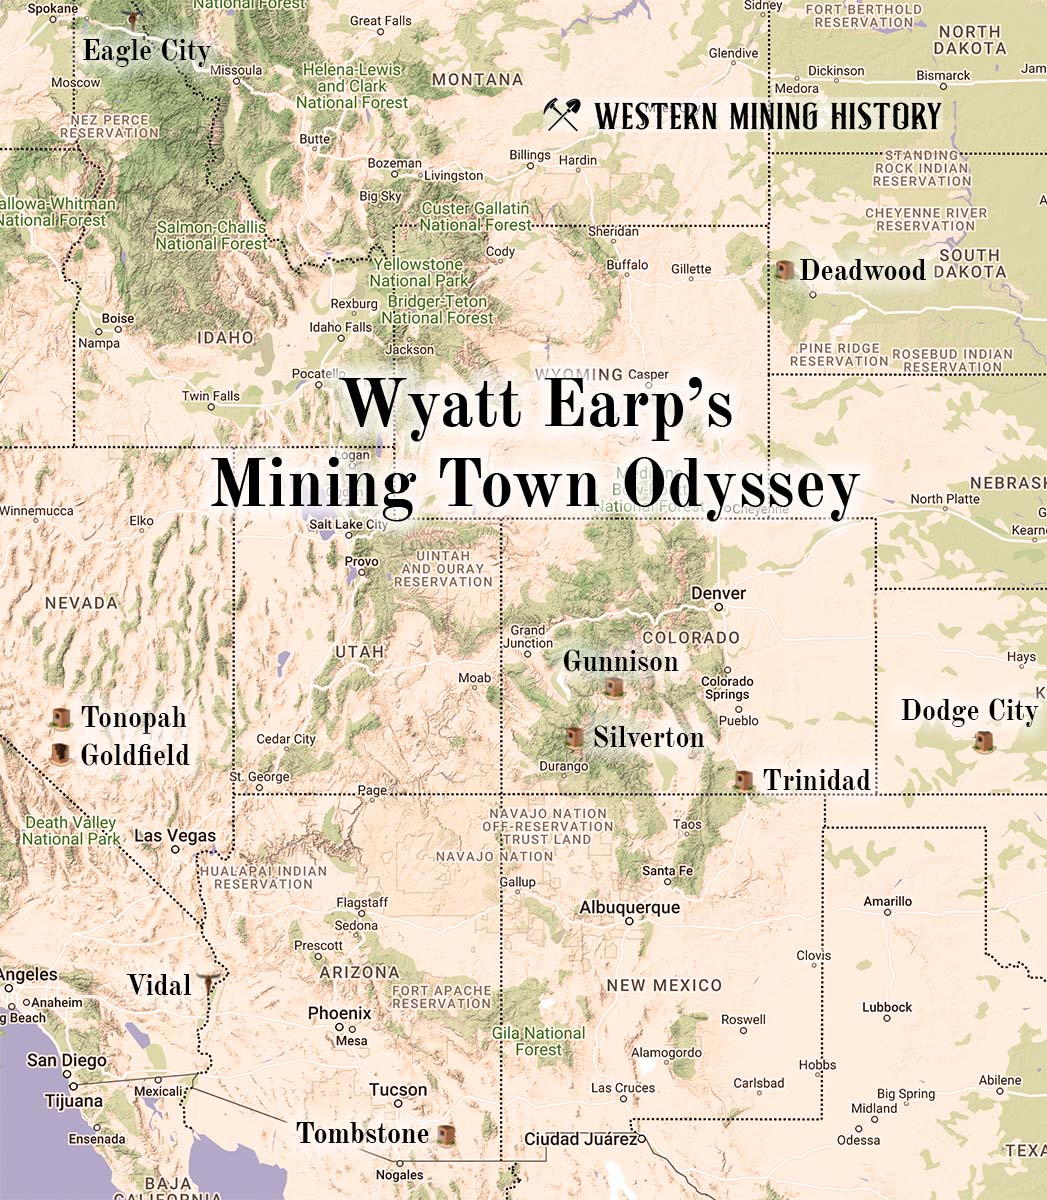 Wyatt Earp: A Mining Town Odyssey